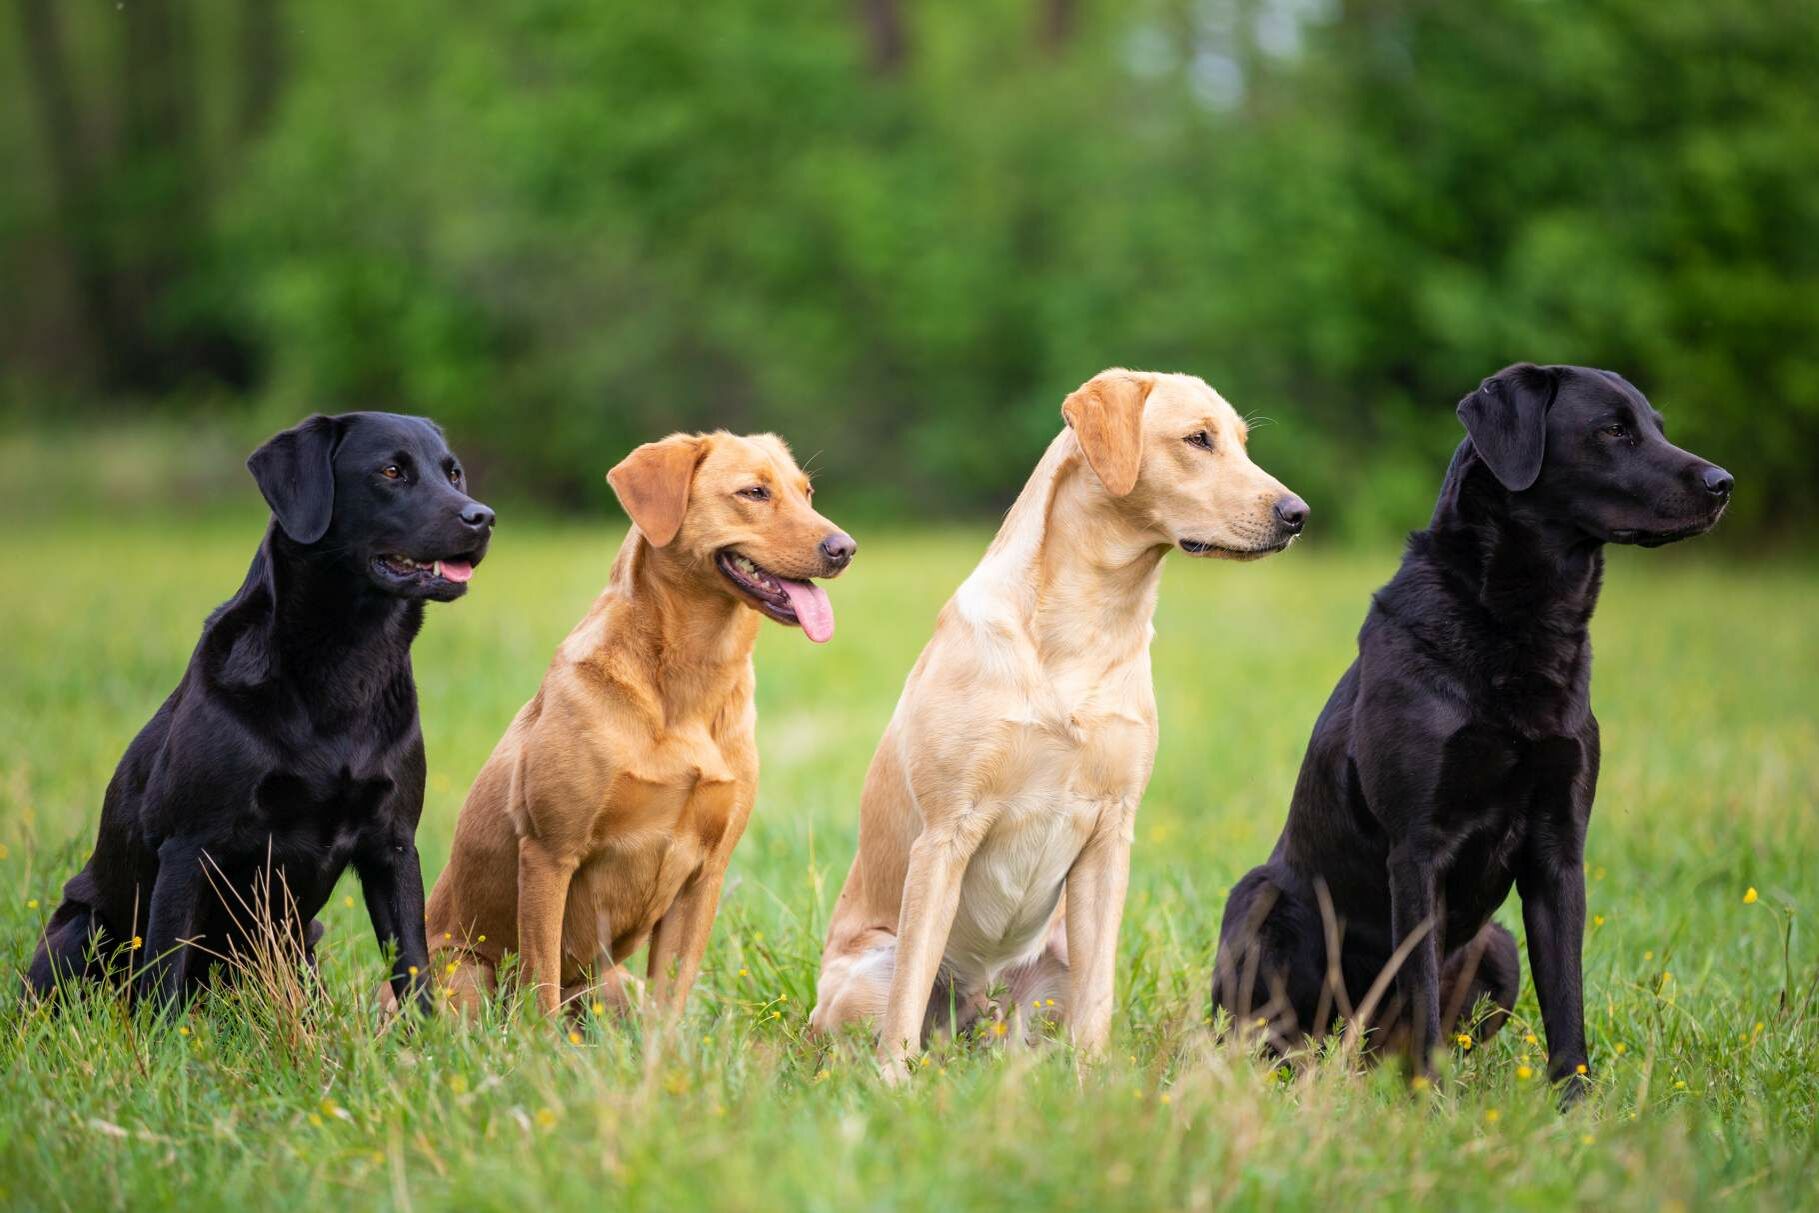 Vier Labradore mit unterschiedlichen Färbungen sitzen nebeneinander auf einer Wiese. Die beiden äußeren Hunde haben eine schwarze Färbung, die mittleren Tiere ein hellrotes sowie hellcremes Fell.